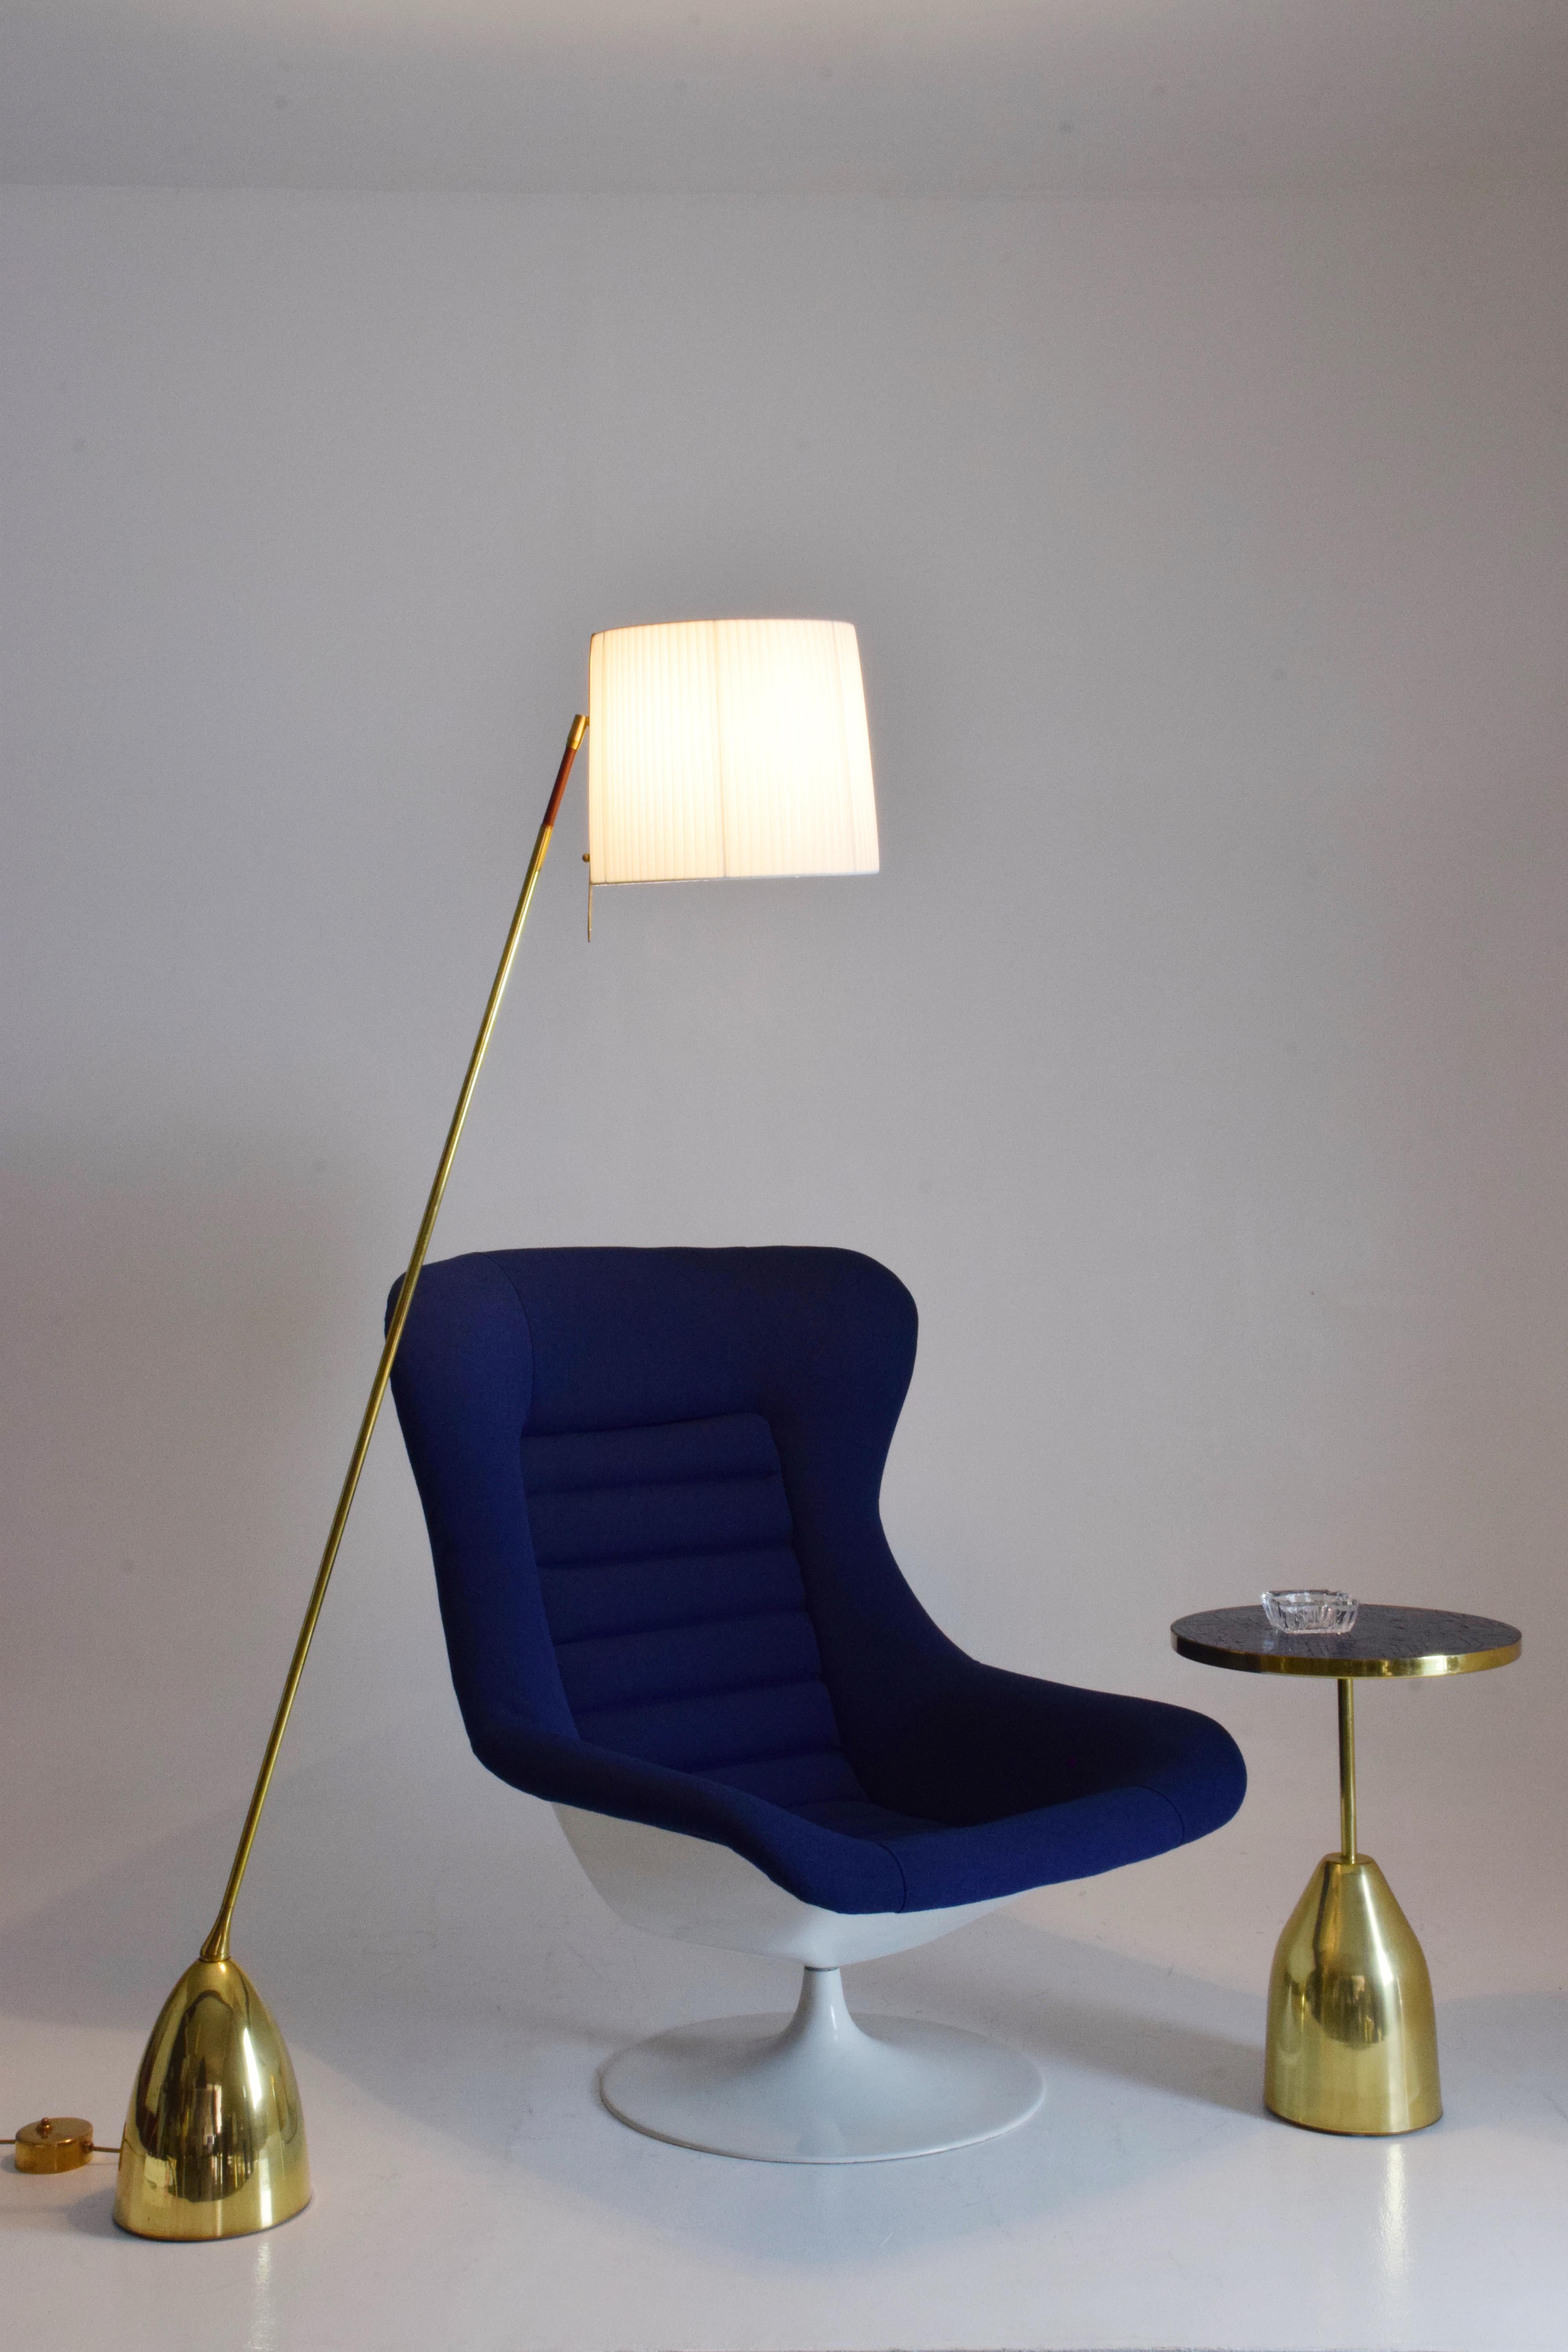 lurashell chair for sale